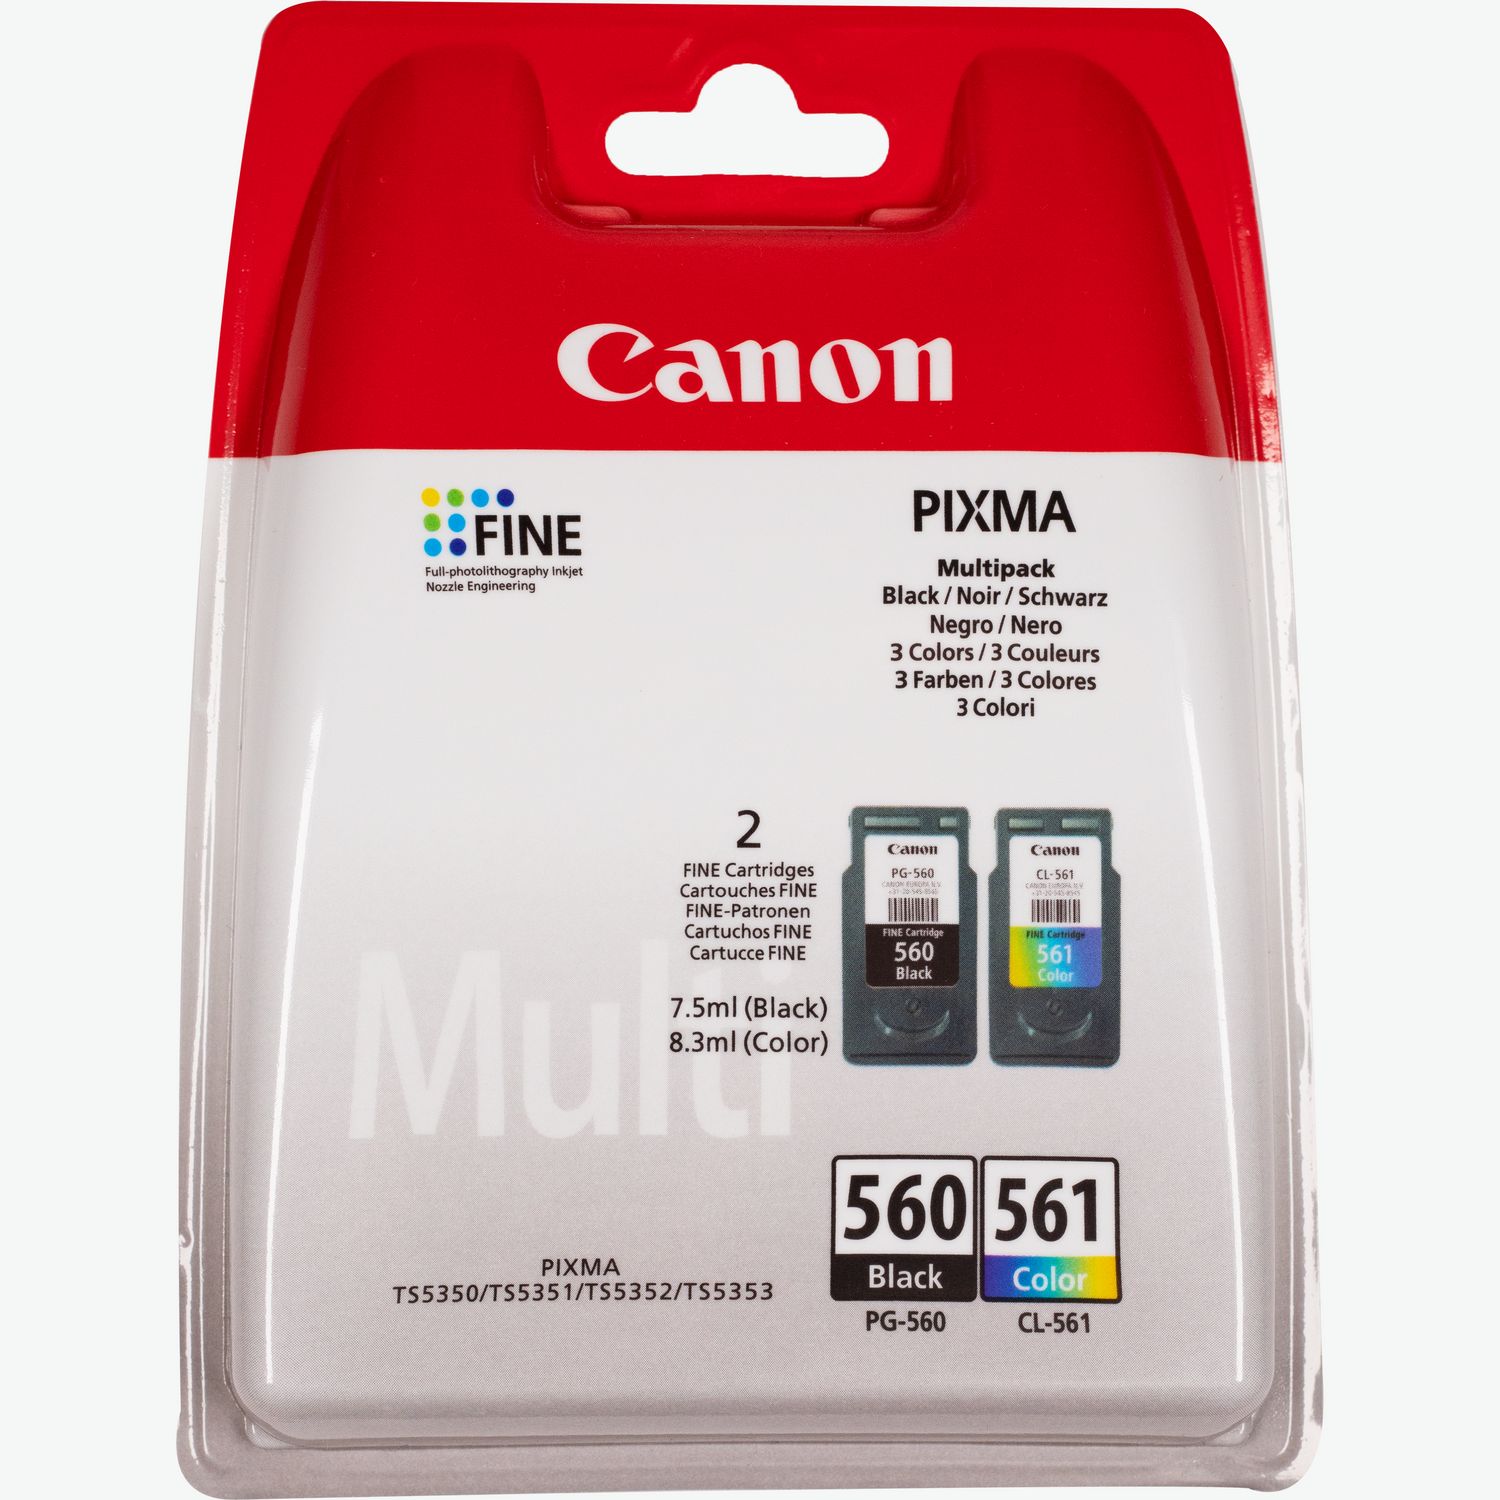 Impresora Canon PIXMA TS5350